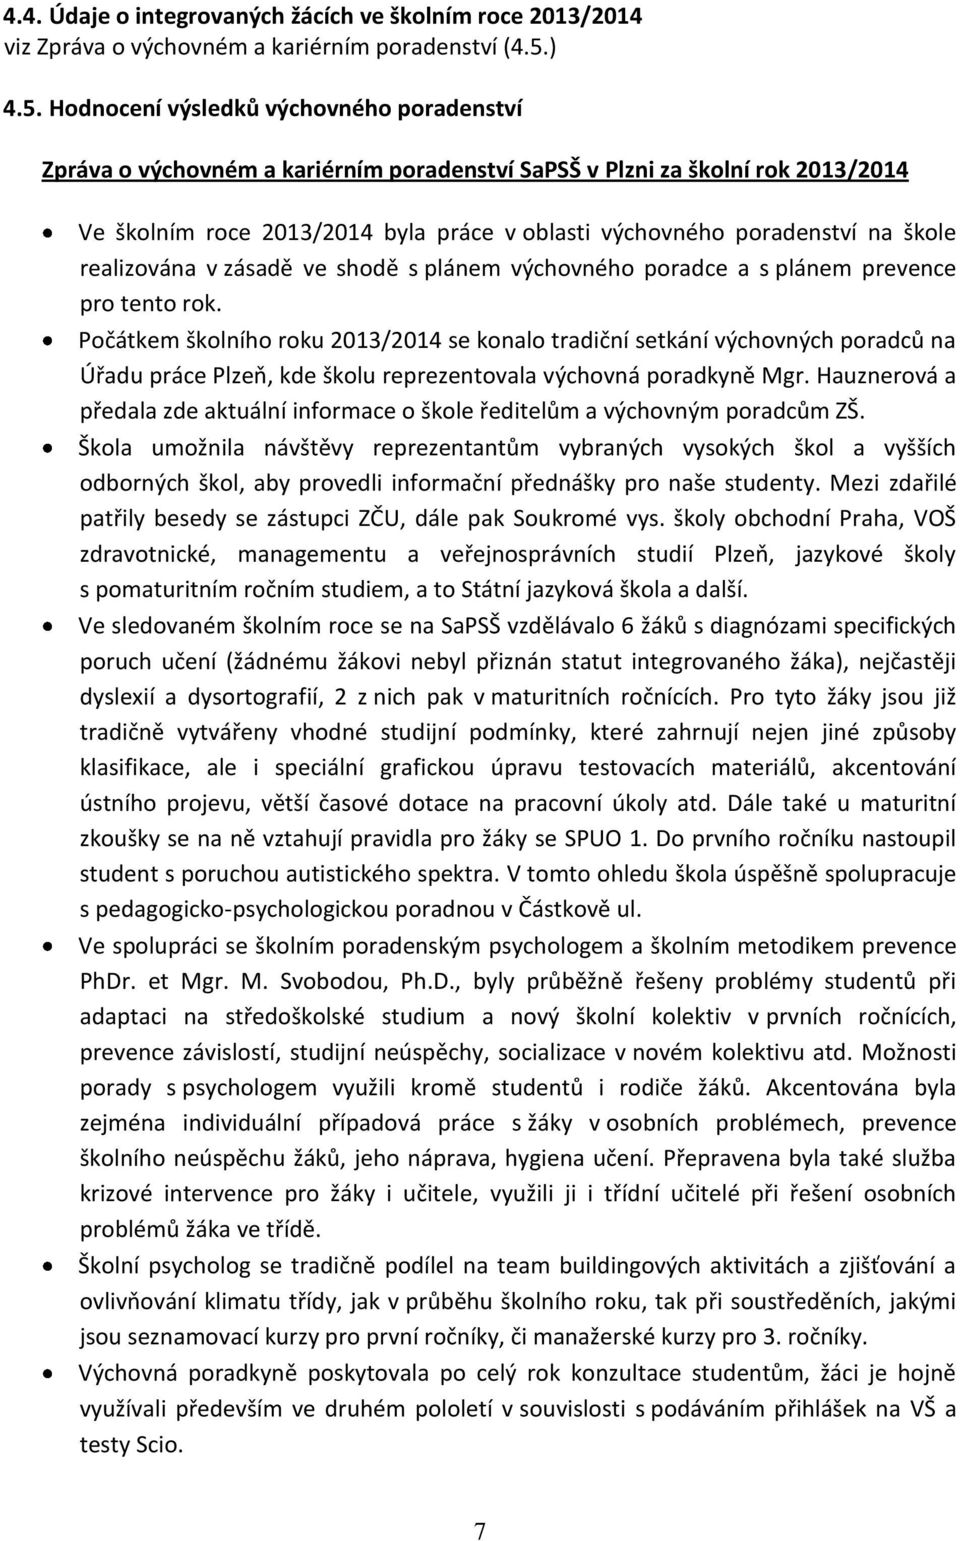 Hodnocení výsledků výchovného poradenství Zpráva o výchovném a kariérním poradenství SaPSŠ v Plzni za školní rok 2013/2014 Ve školním roce 2013/2014 byla práce v oblasti výchovného poradenství na